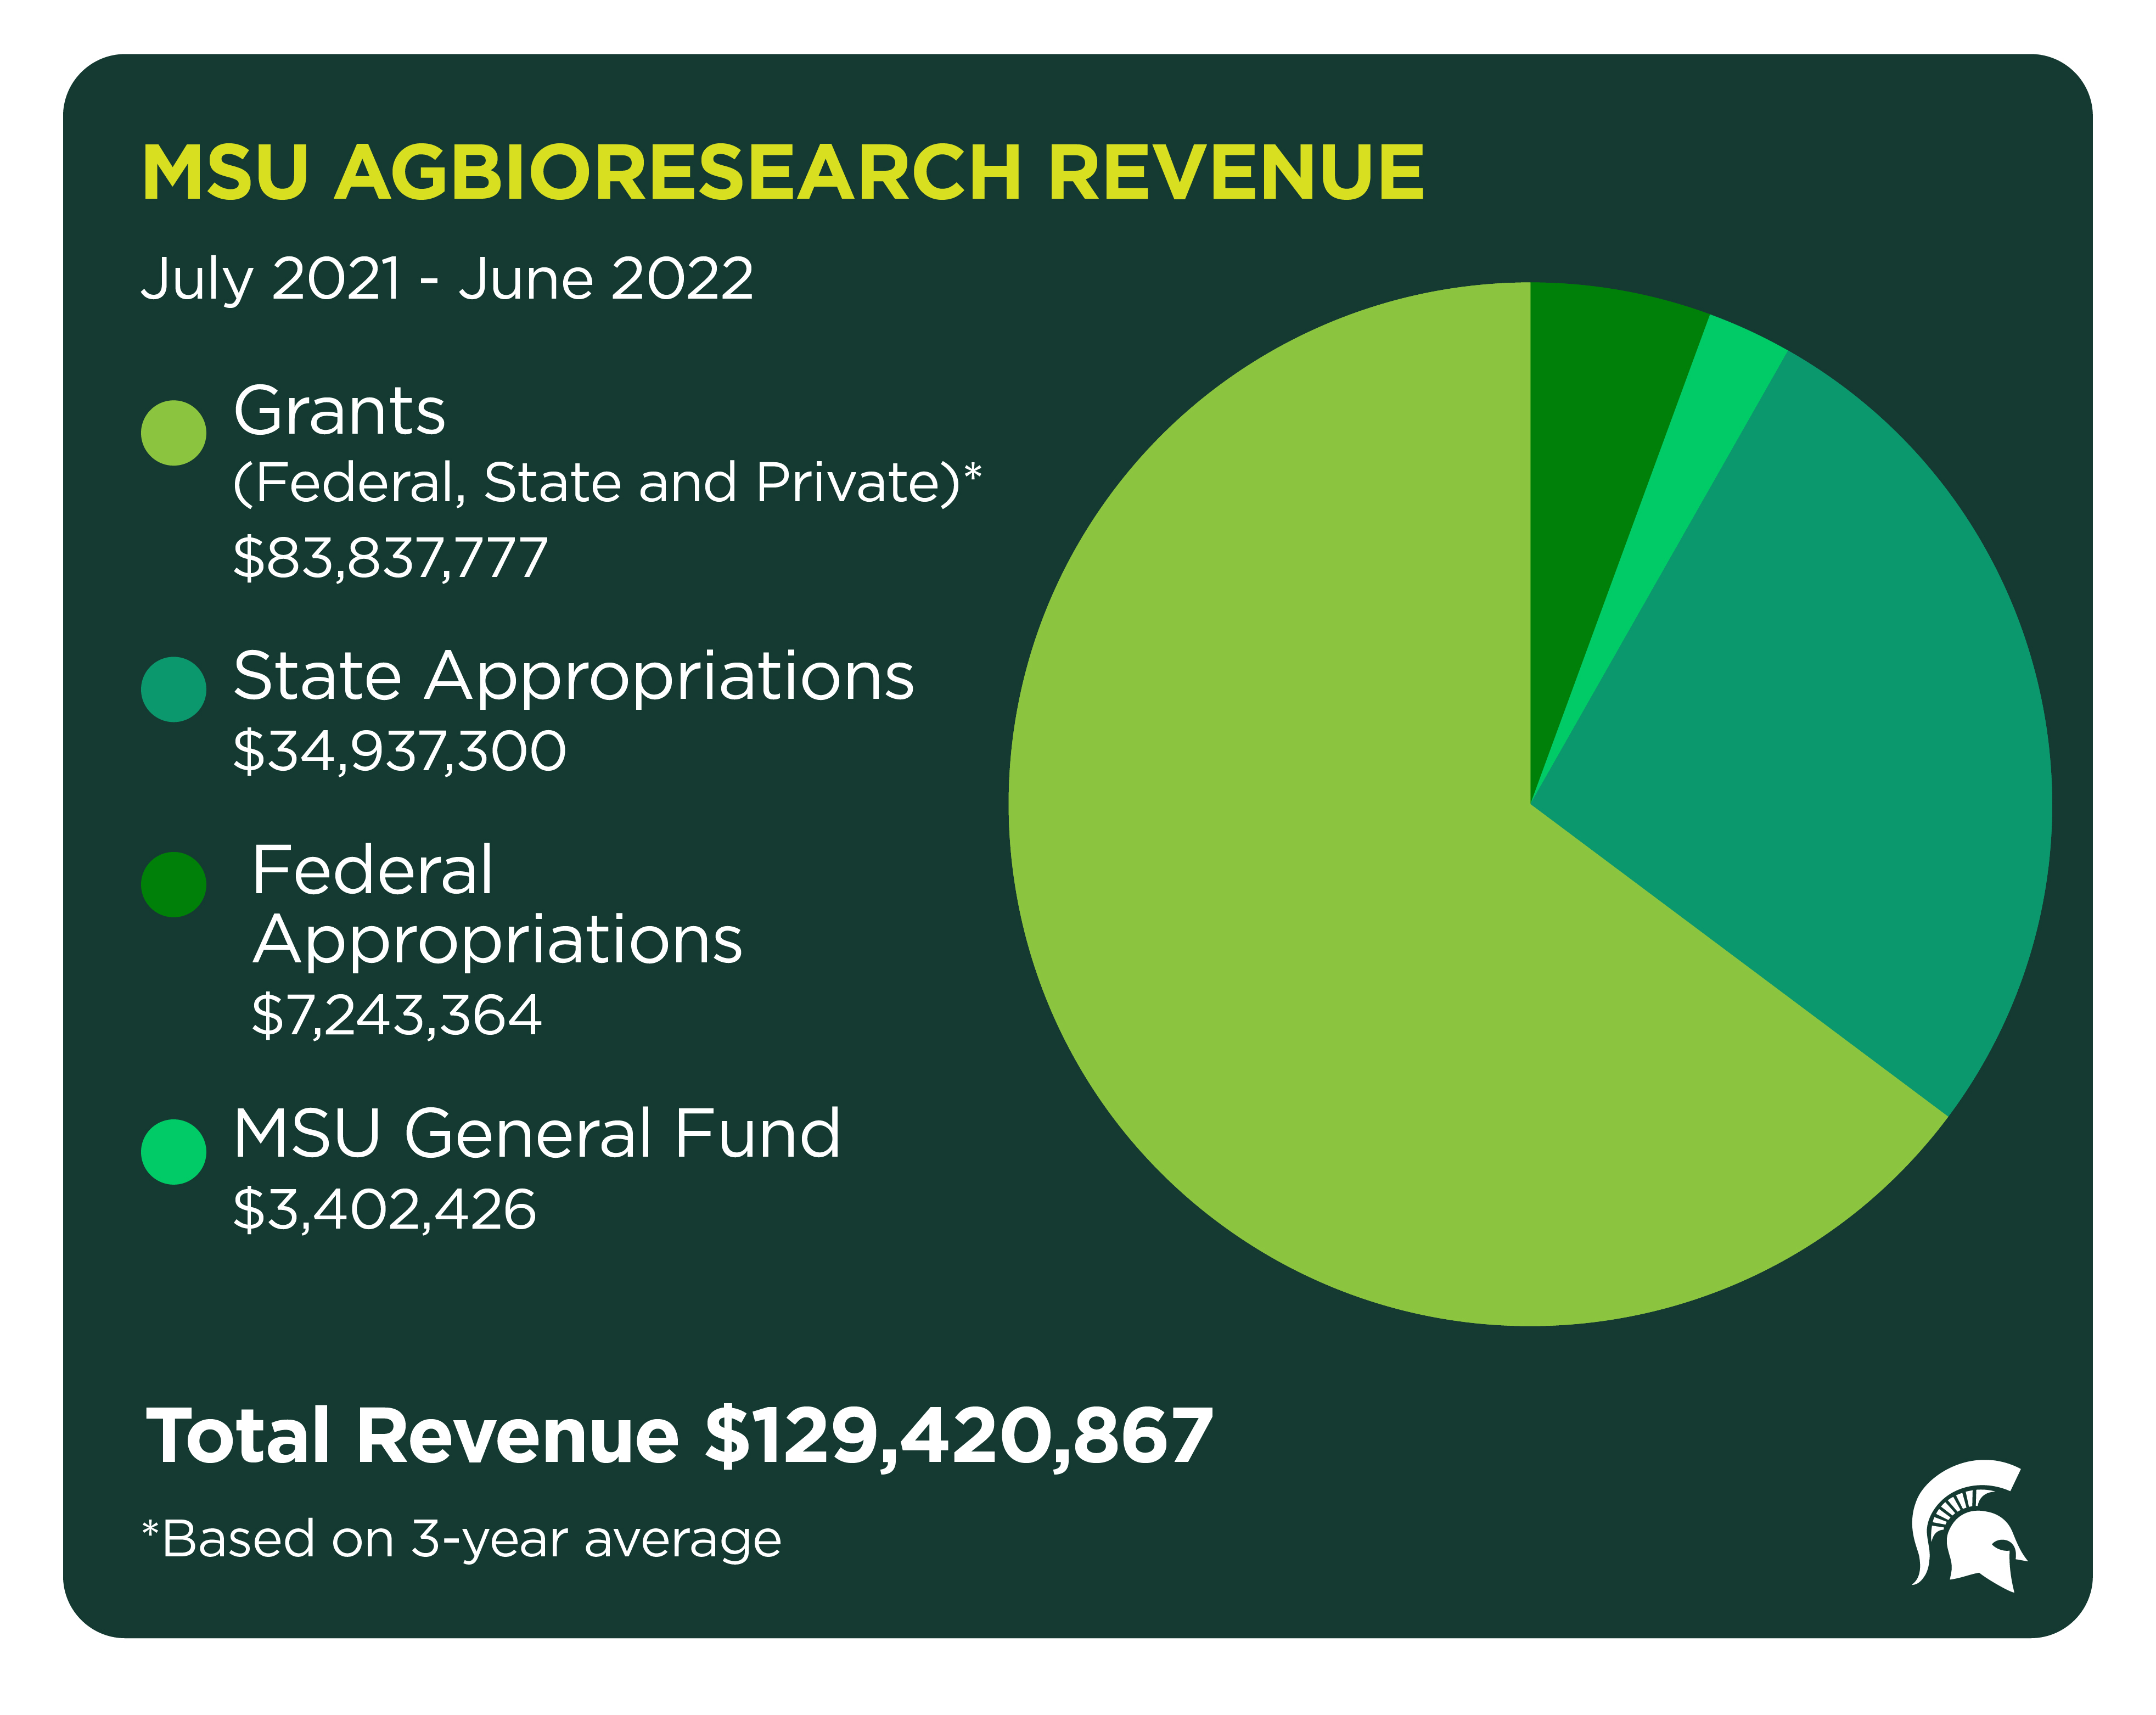 MSU AgBioResearch revenue totaled more than $129M.